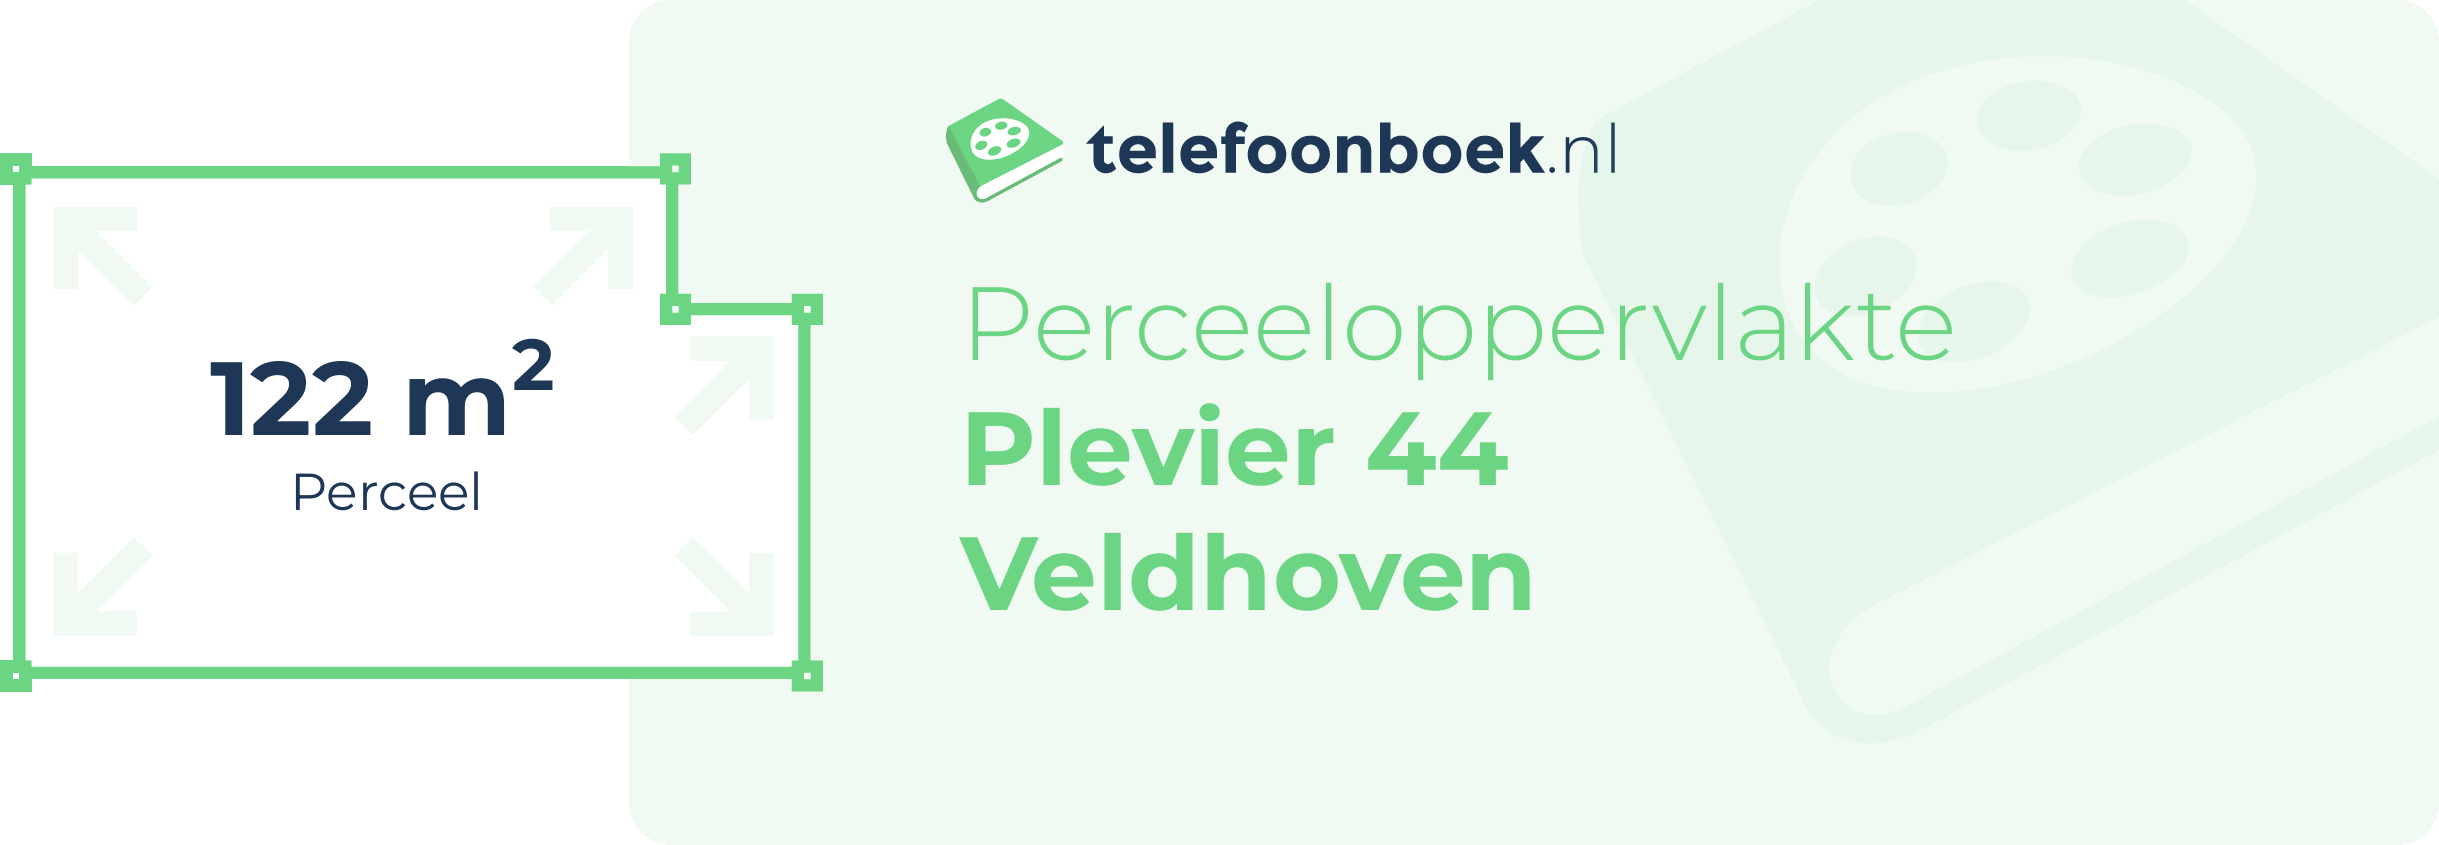 Perceeloppervlakte Plevier 44 Veldhoven